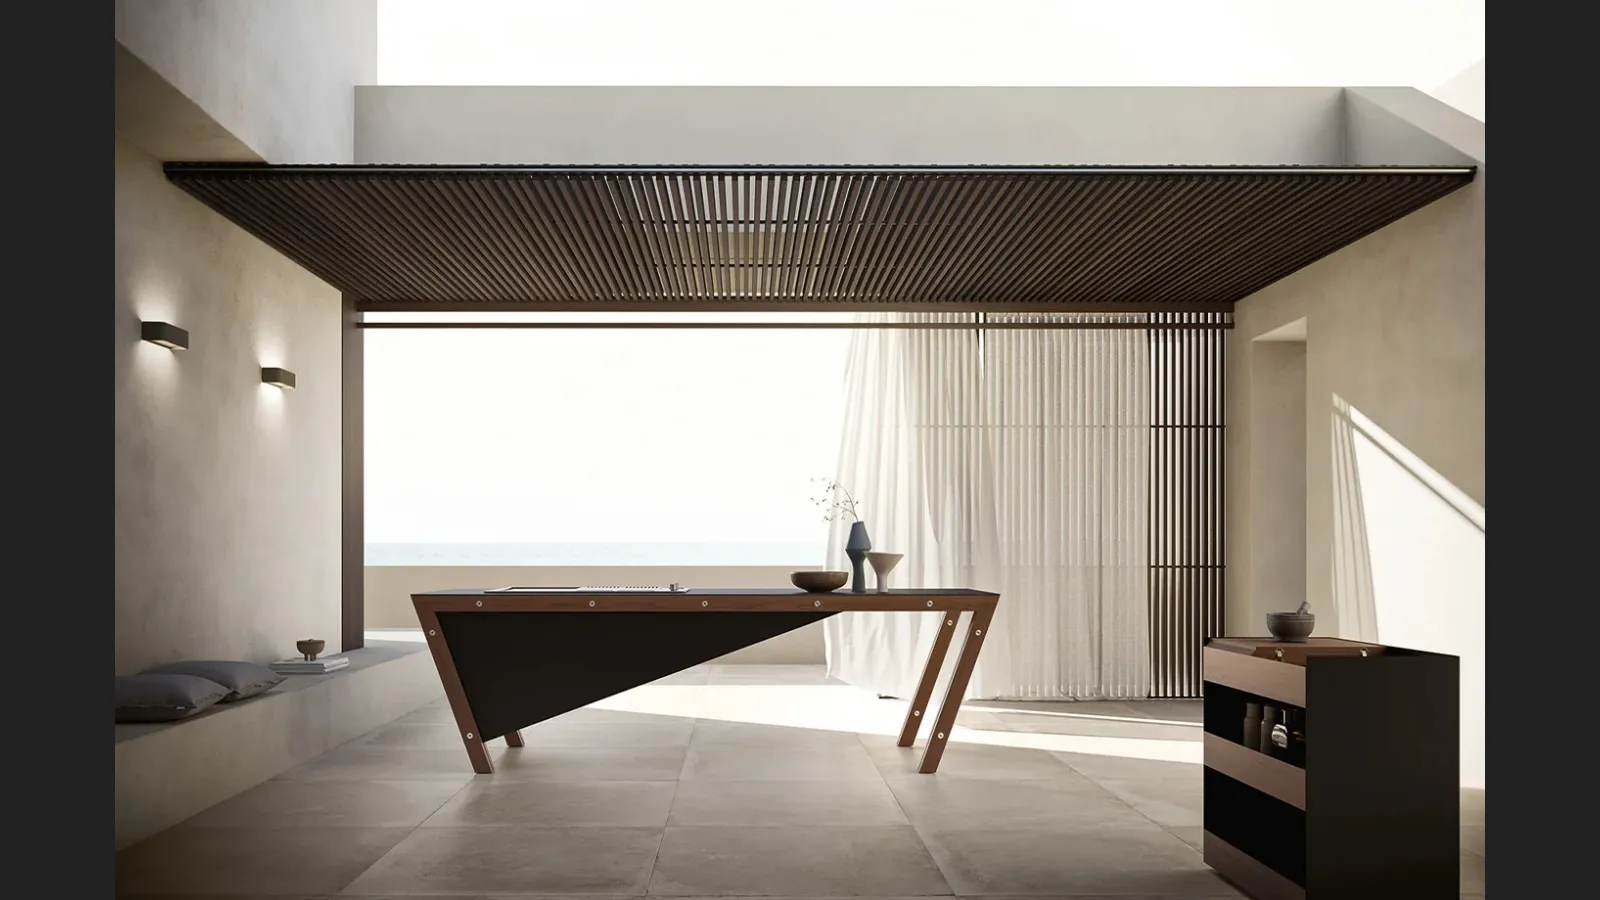 Cucina Design a isola in acciaio e legno con top in gres Project 07 di Modulnova